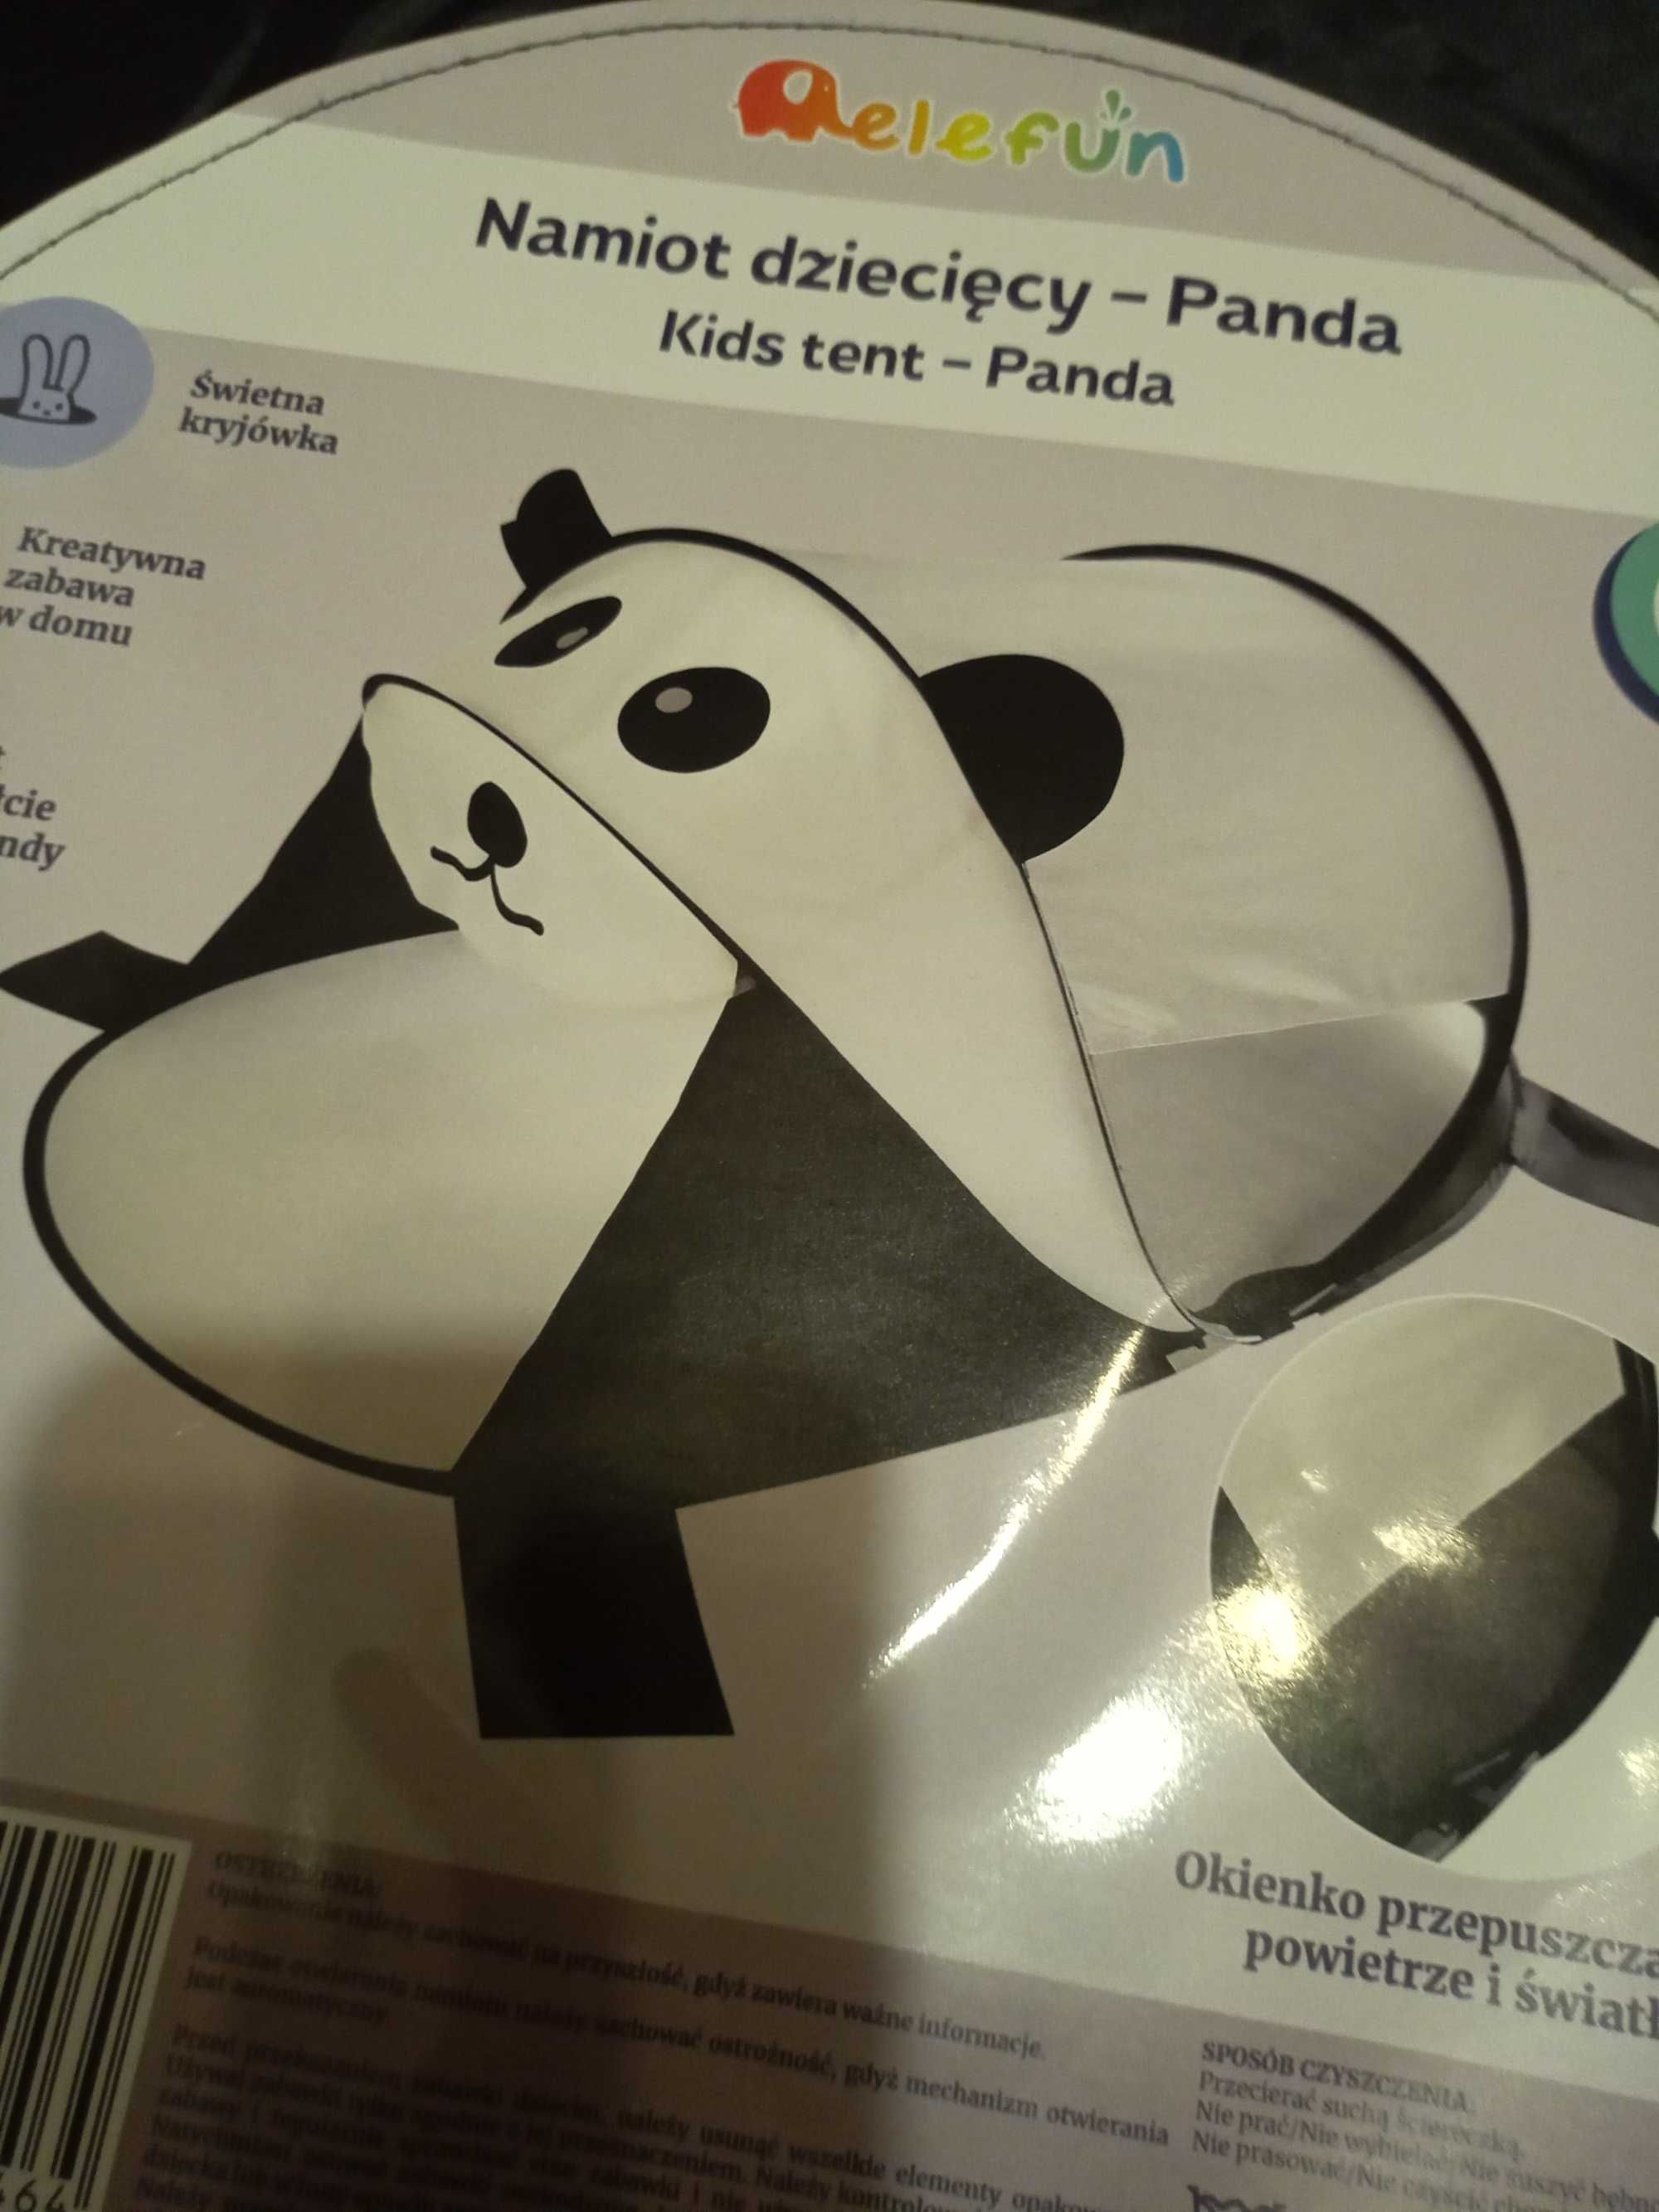 nowy namiot dla dzieci samorozkladajacy sie panda